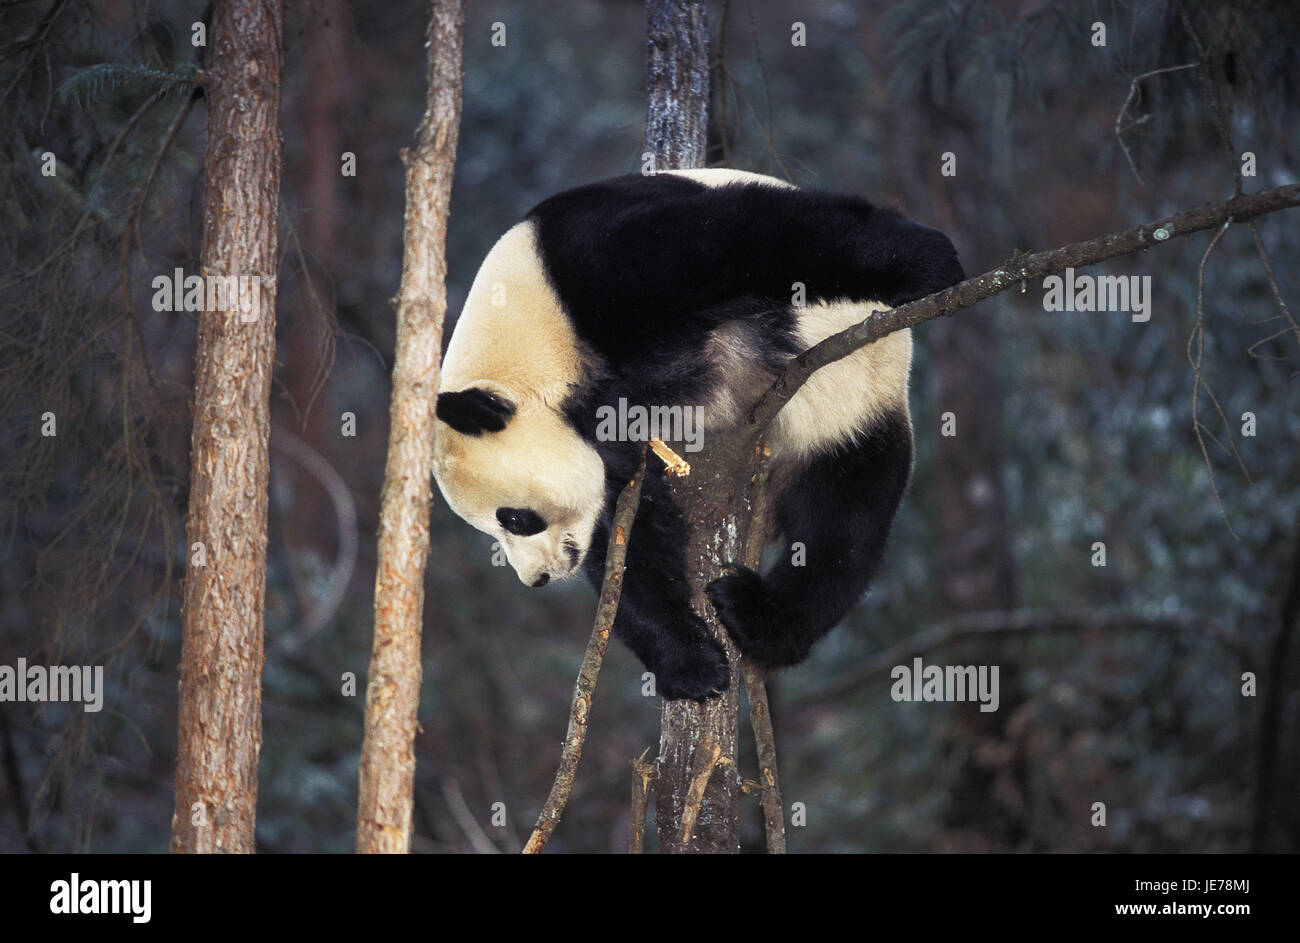 Big panda, Ailuropoda melanoleuca, adult animal, lowered, branch, Wolong reserve, China, Stock Photo